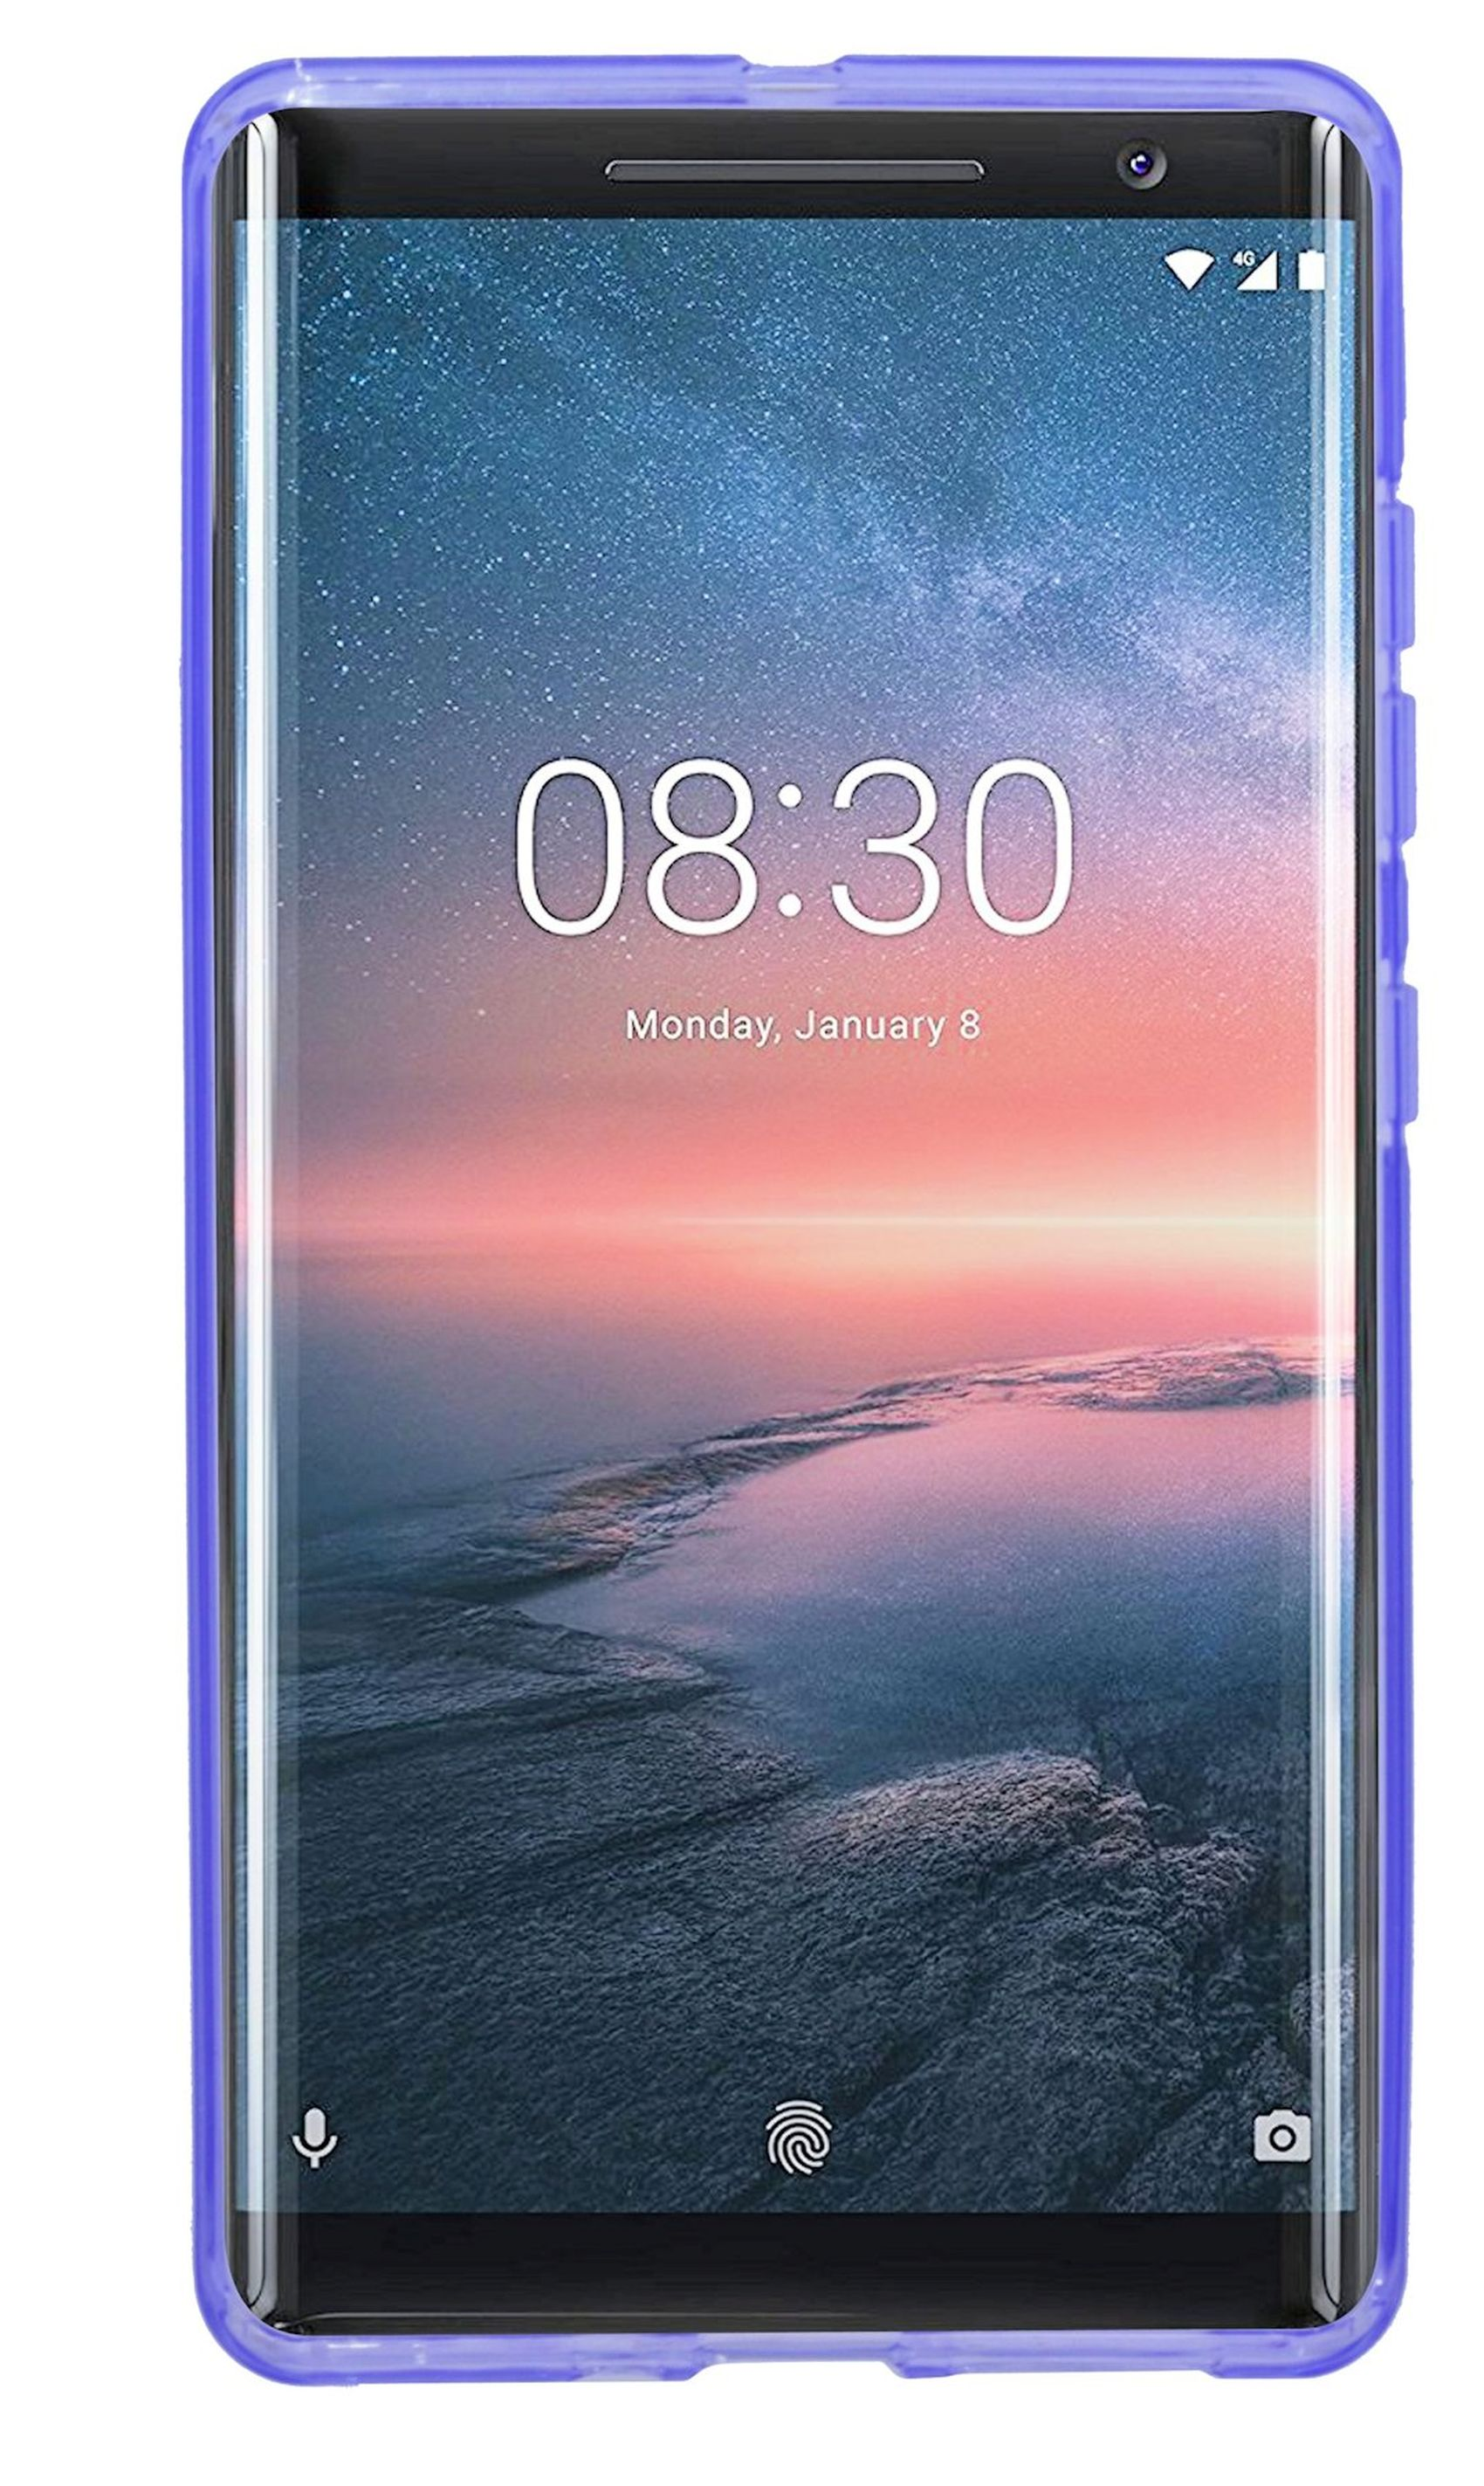 COFI S-Line Cover, Bumper, 8 Violett Sirocco, Nokia